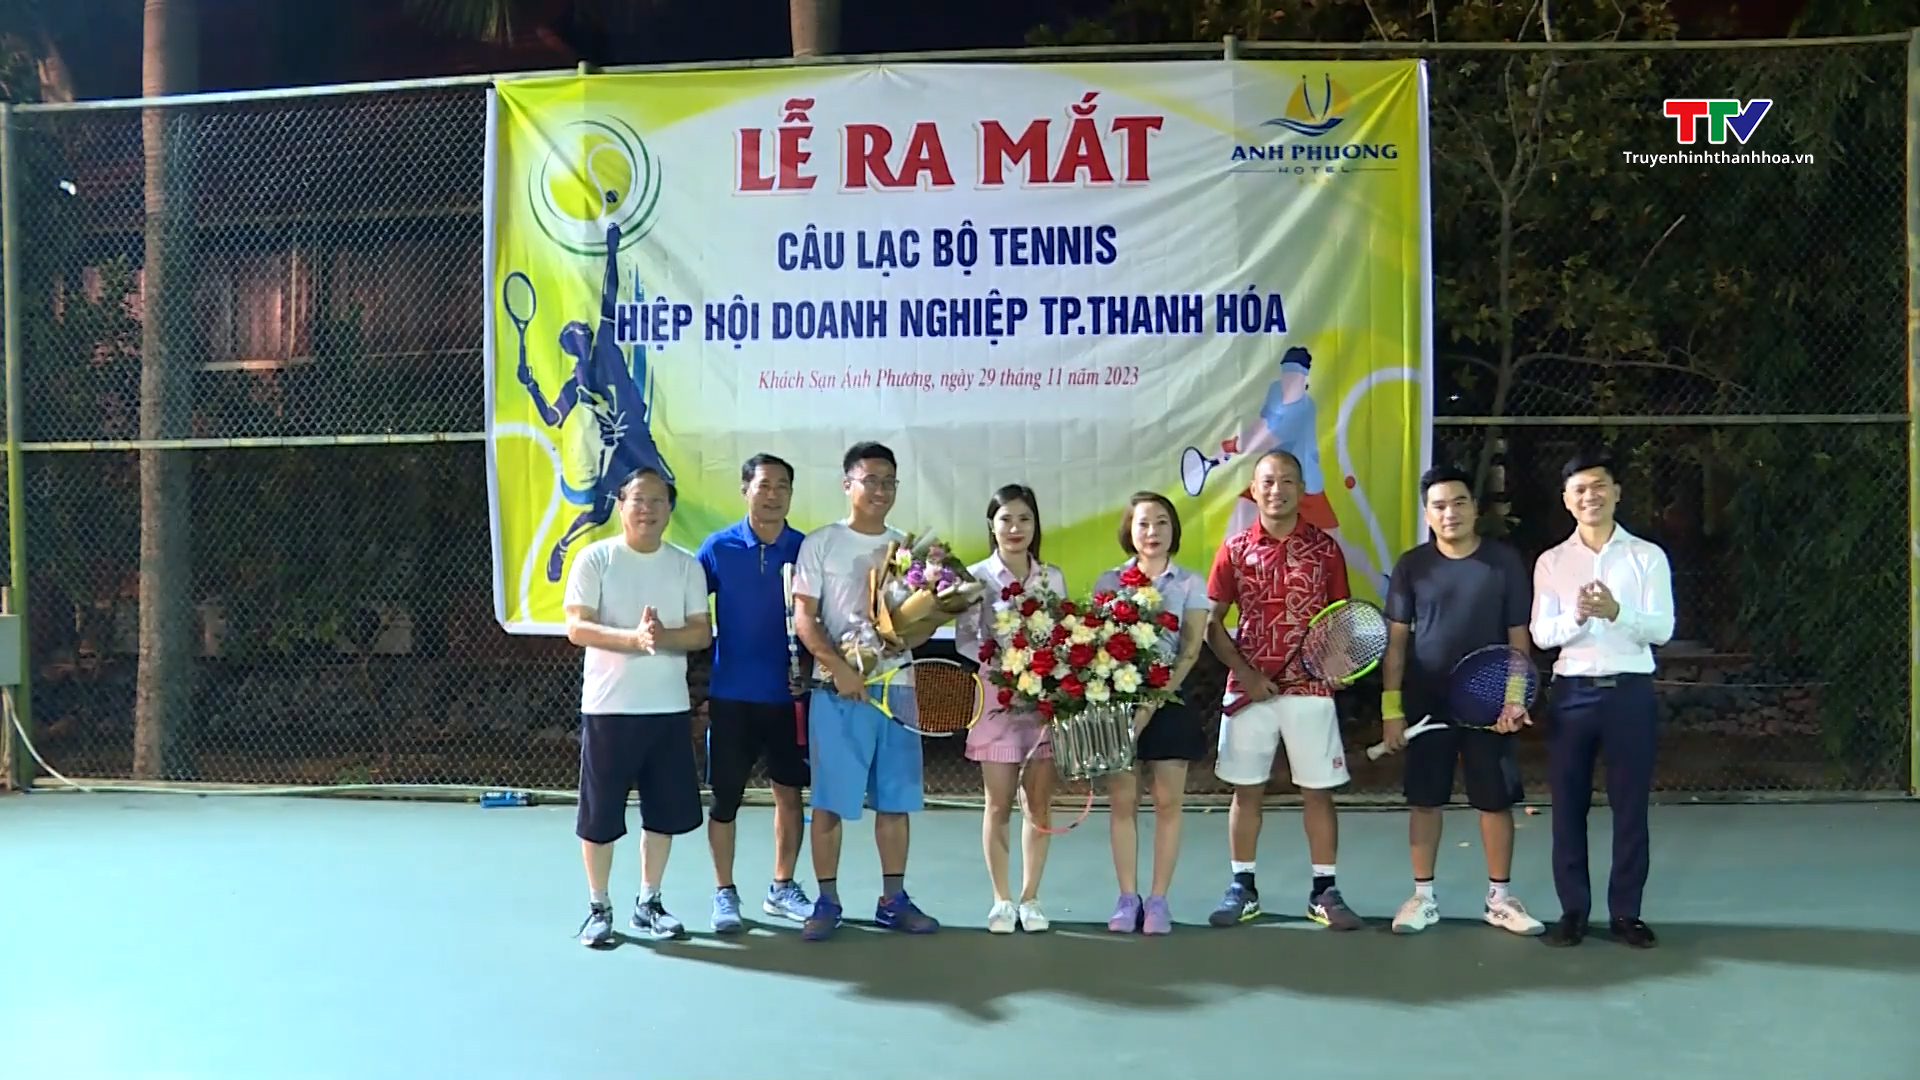 Ra mắt Câu lạc bộ quần vợt Hiệp hội doanh nghiệp thành phố Thanh Hóa- Ảnh 1.